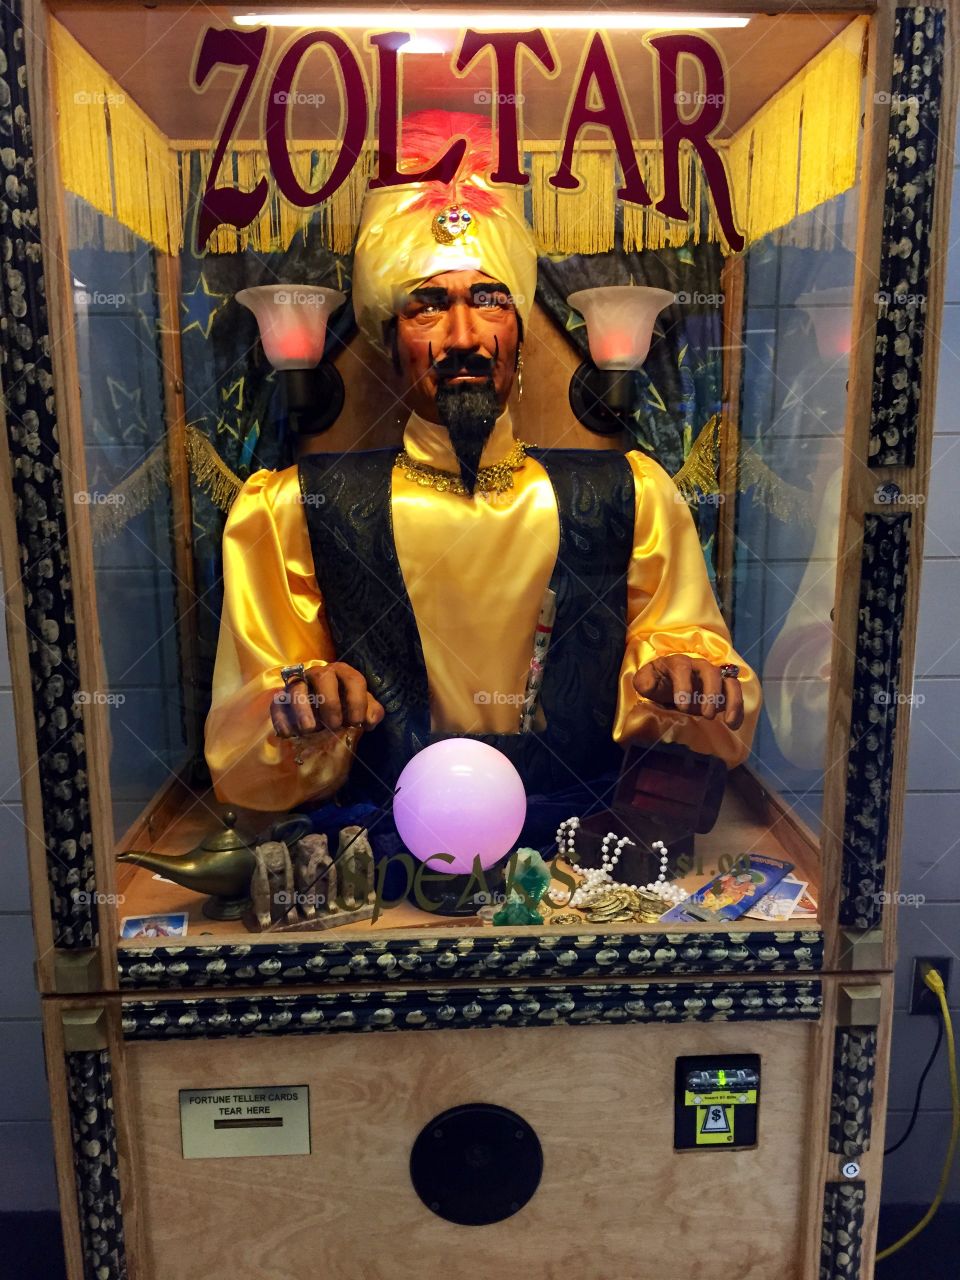 Zoltar the fortune teller